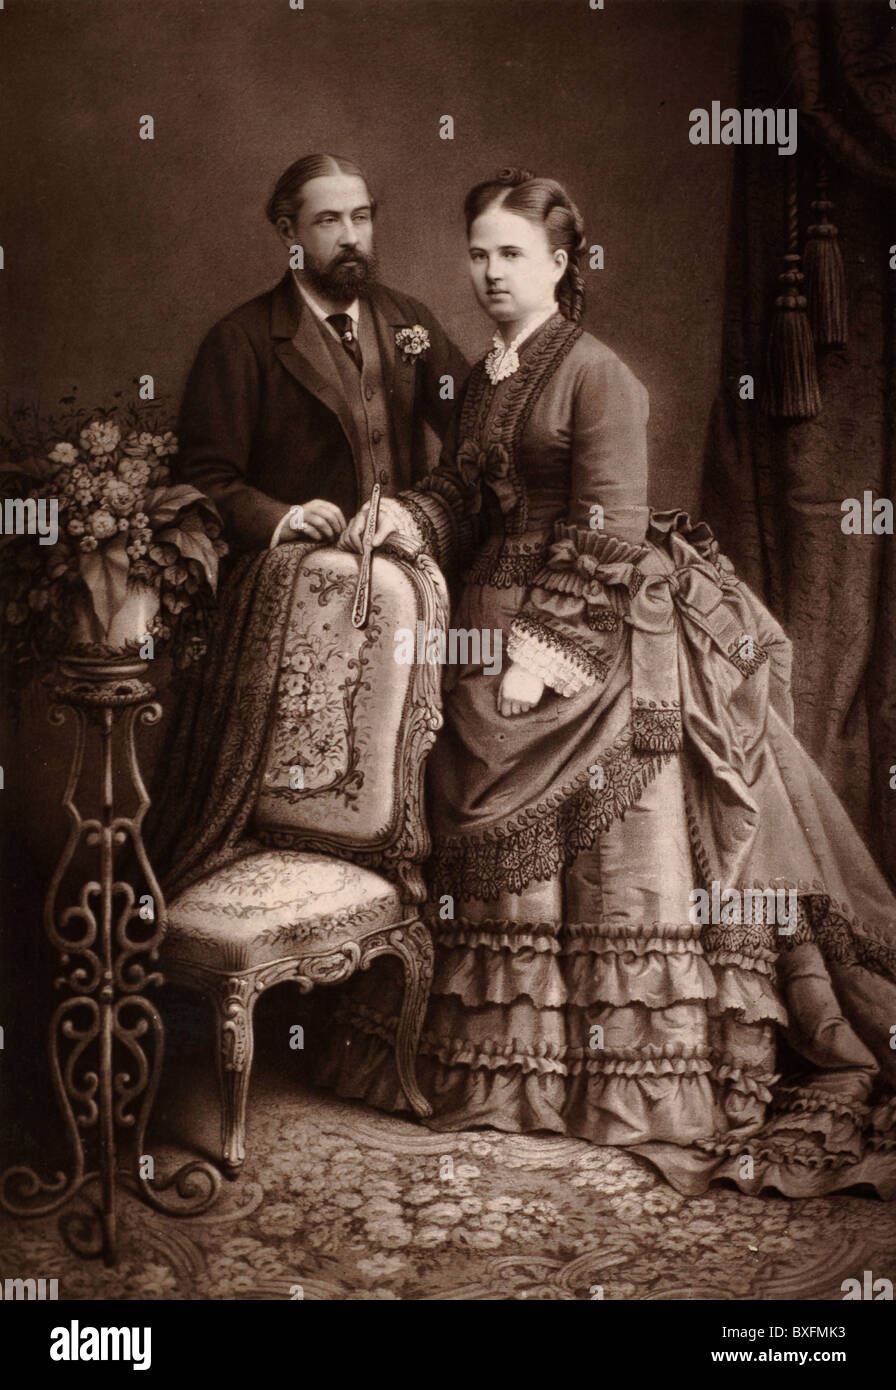 Principe Alfred (1844-1900) Duca di Edimburgo (2° Figlio della Regina Vittoria), Duca di Sassonia-Coburg & Gotha, & Granduchessa Maria Alexandrovna di Russia (1853-1920), seconda figlia di Tsar Alessandro II di Russia. Fotografia d'epoca c1875 Foto Stock